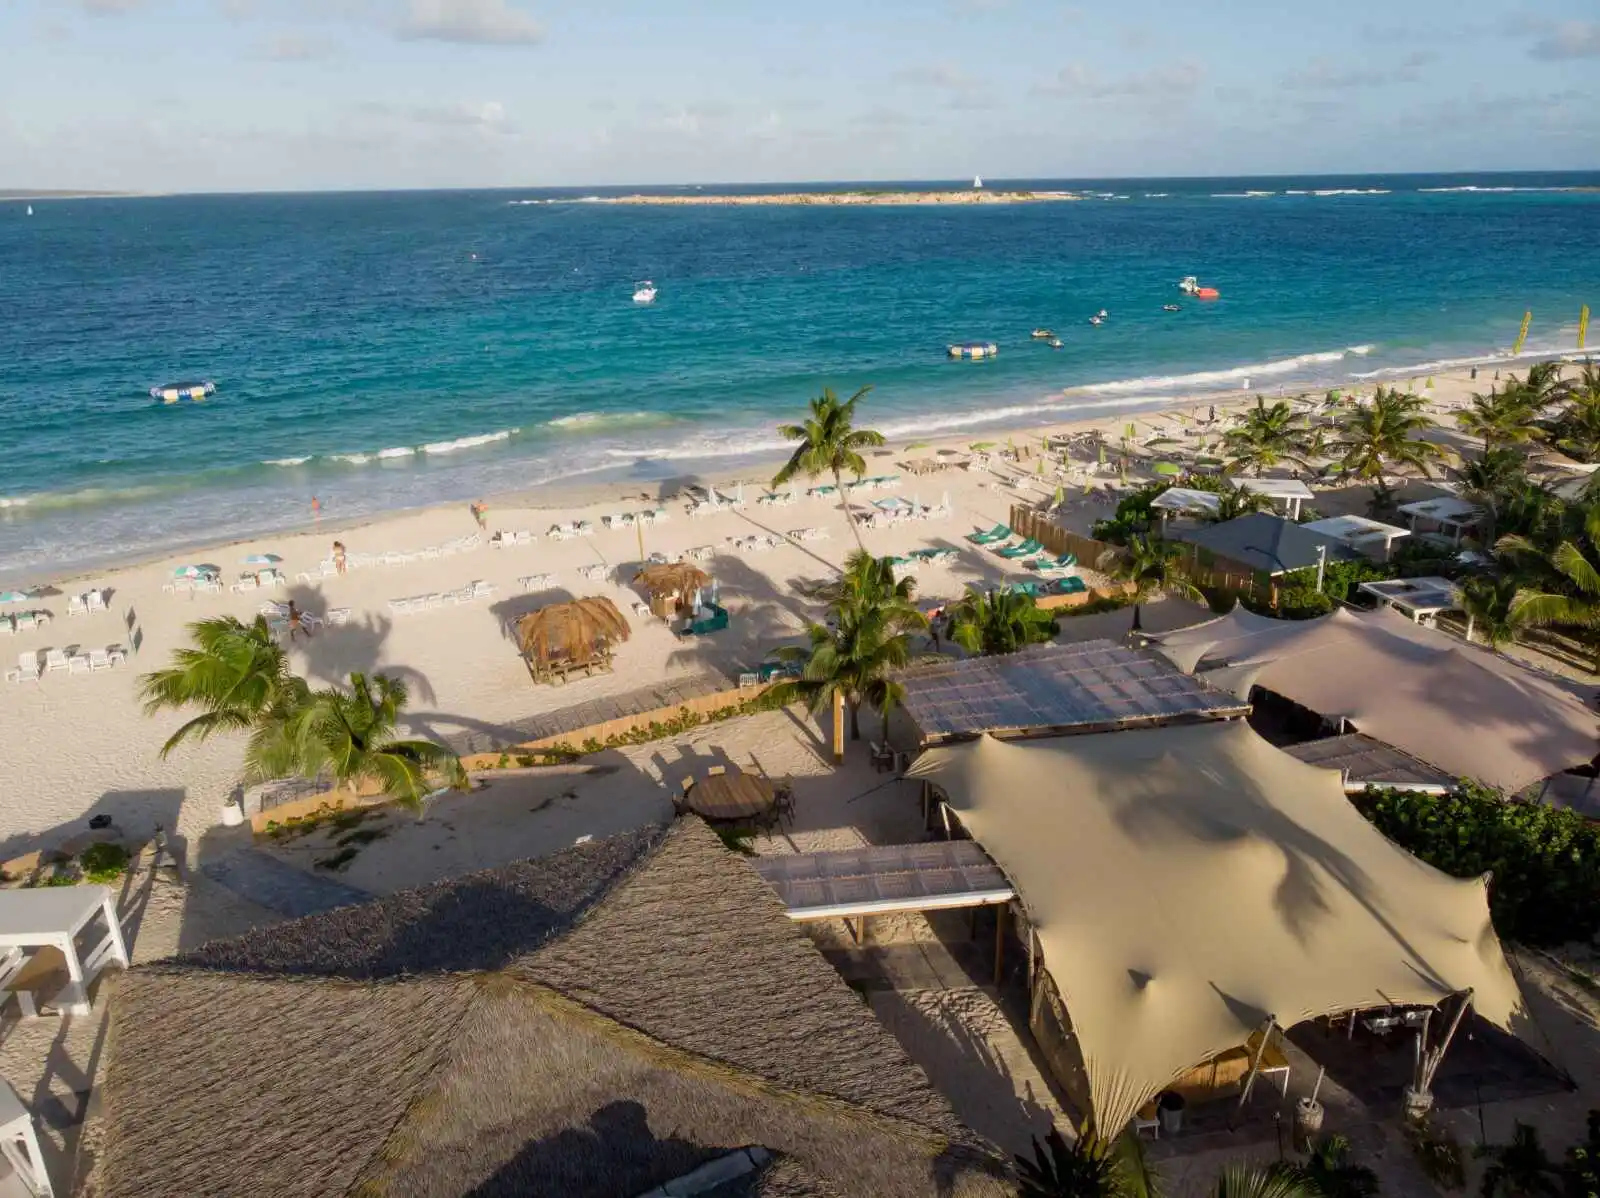 Vue aérienne de la plage et du restaurant, La Playa Orient Bay, Saint-Martin